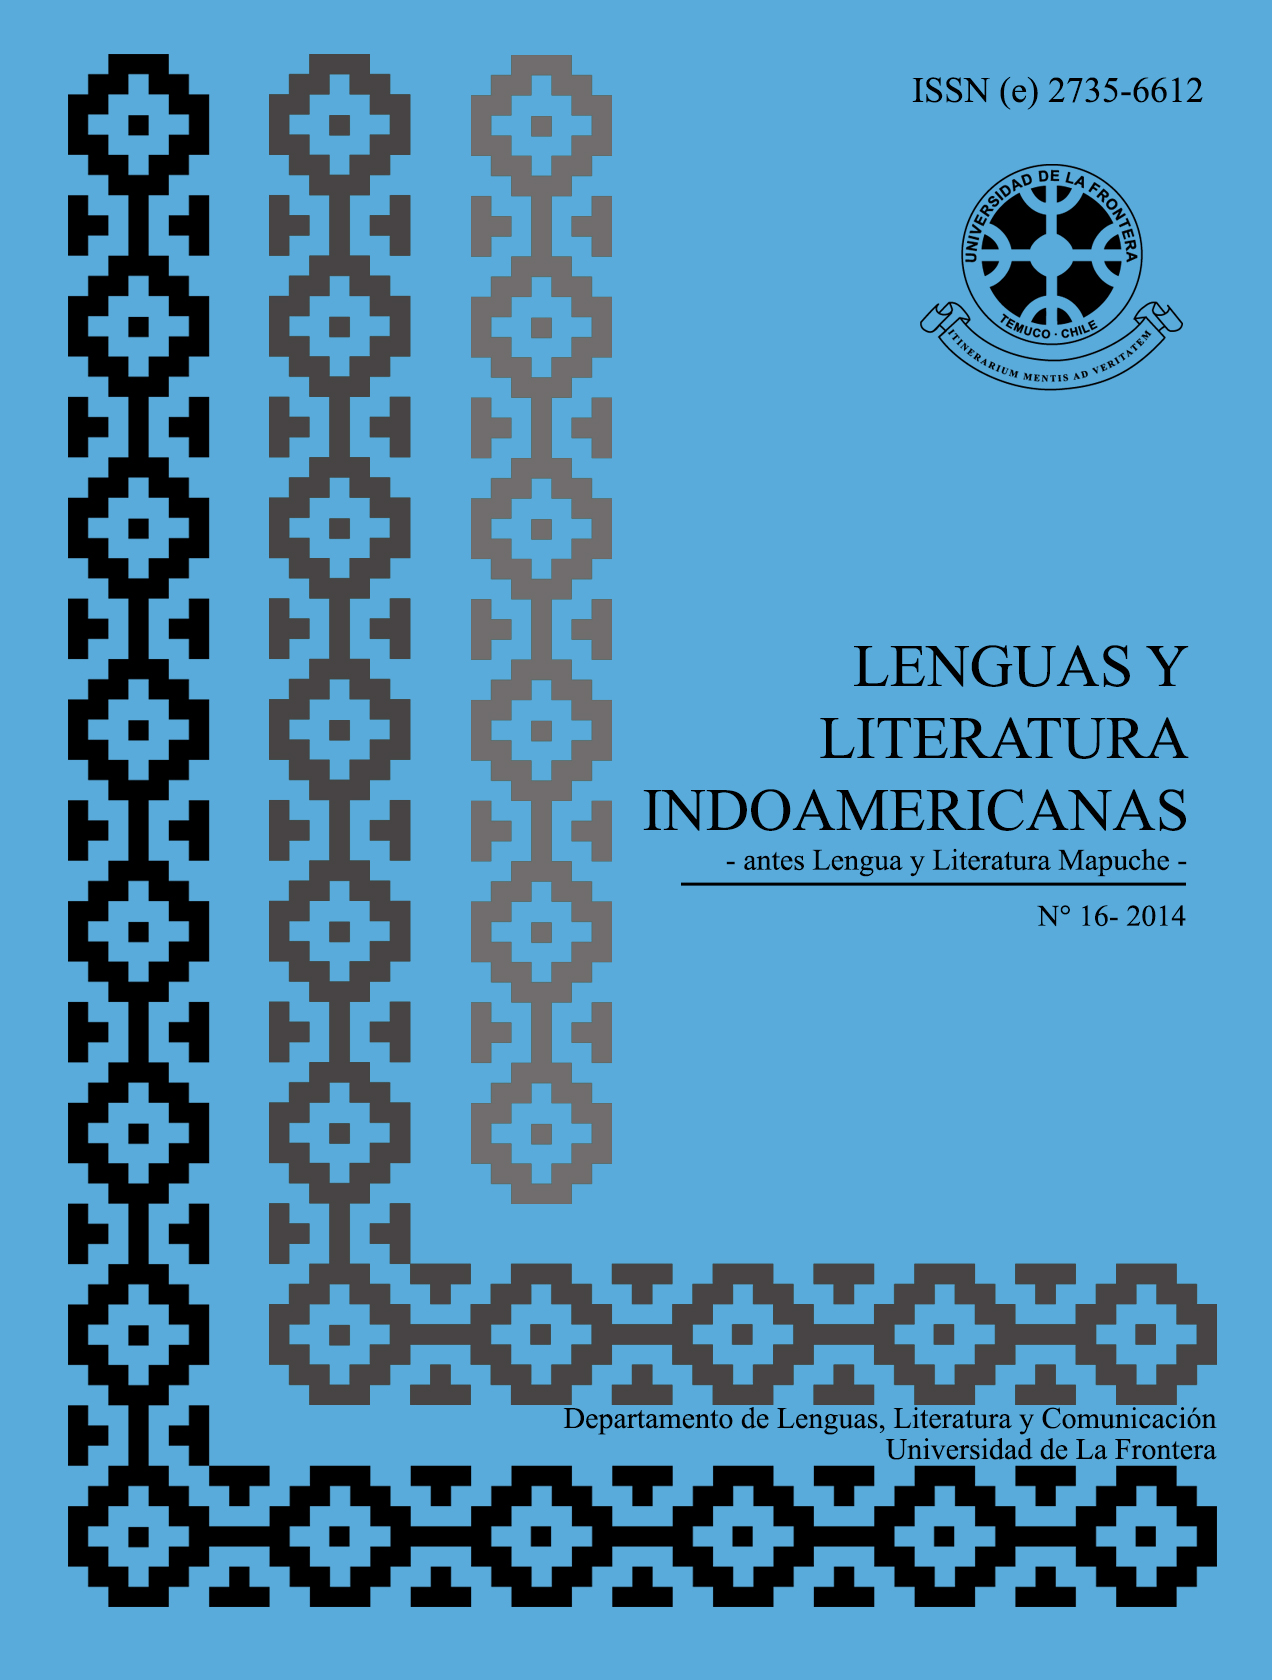 					View Vol. 16 No. 1 (2014): Revista de Lenguas y Literatura Indoamericanas (RLLI)
				